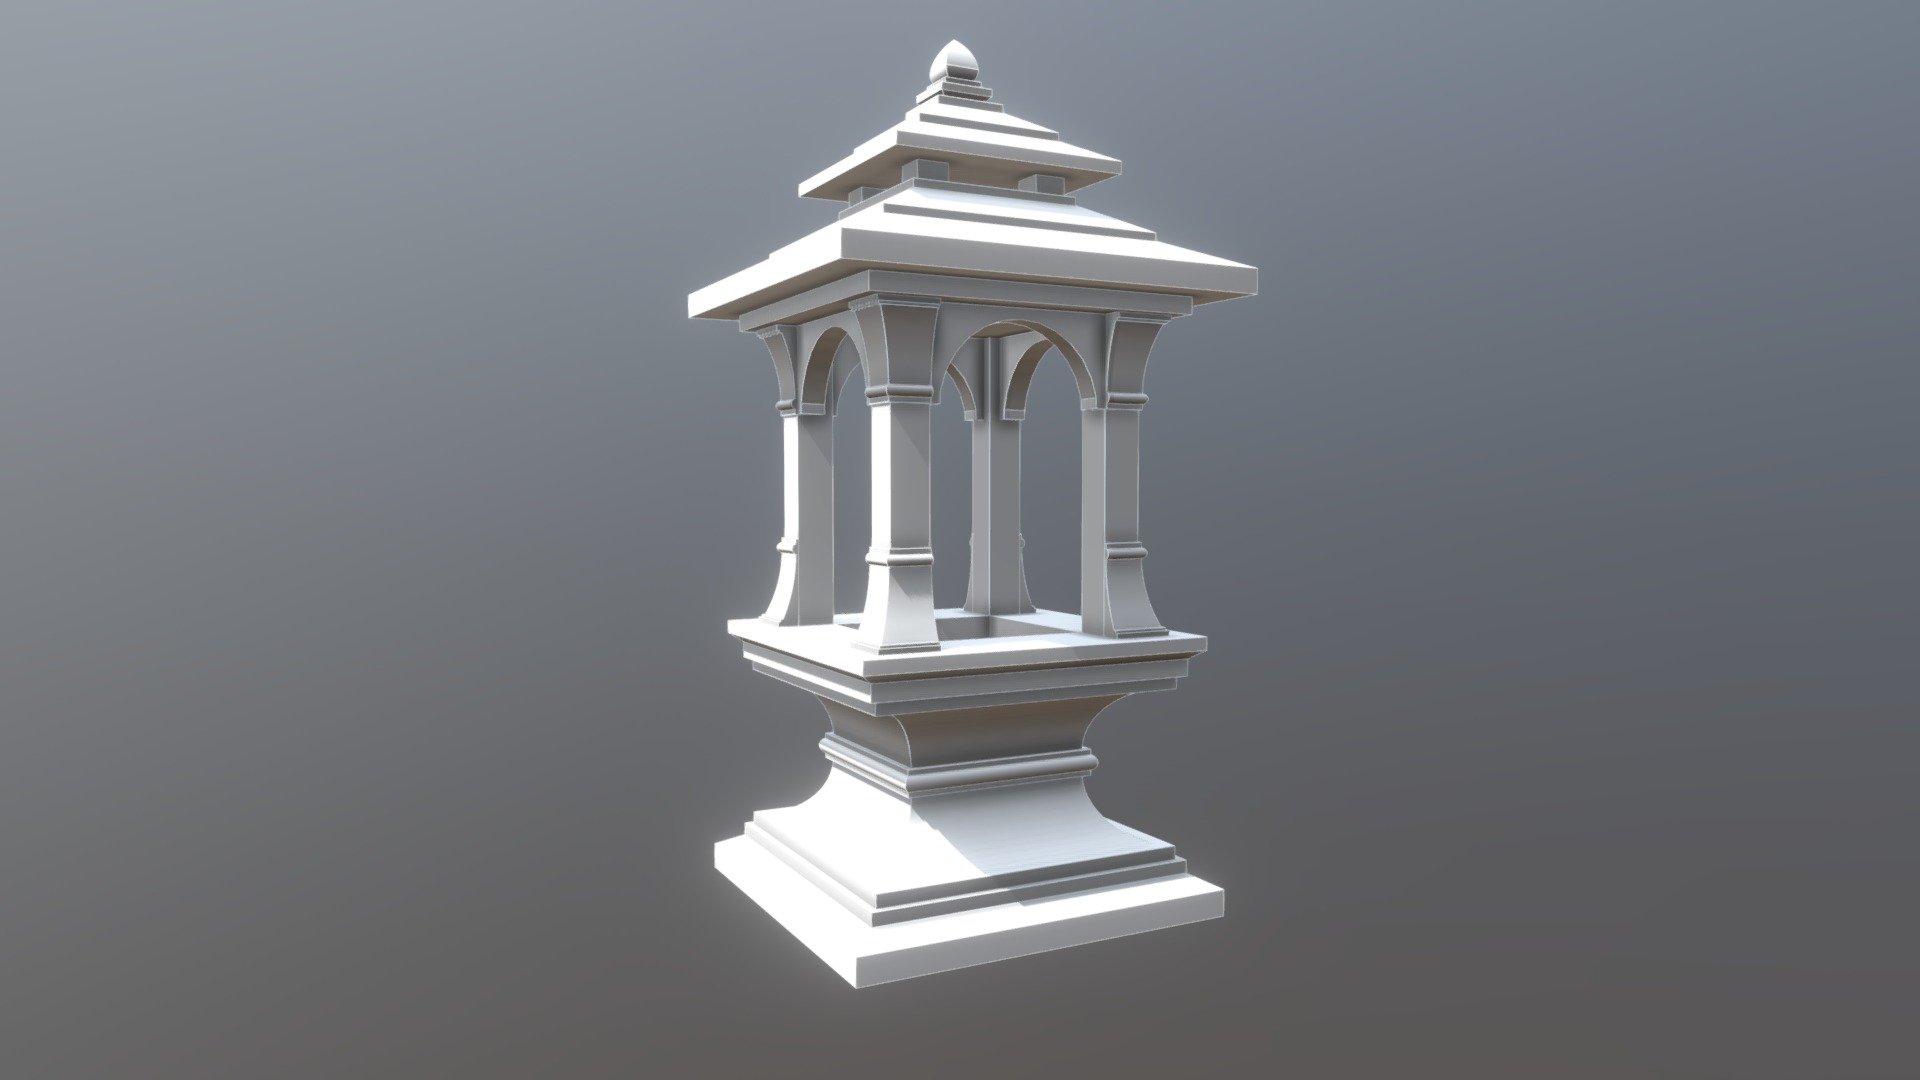 Vedic Style Temple Architecture - 3D model by Pavan (@pavankrsnadas ...